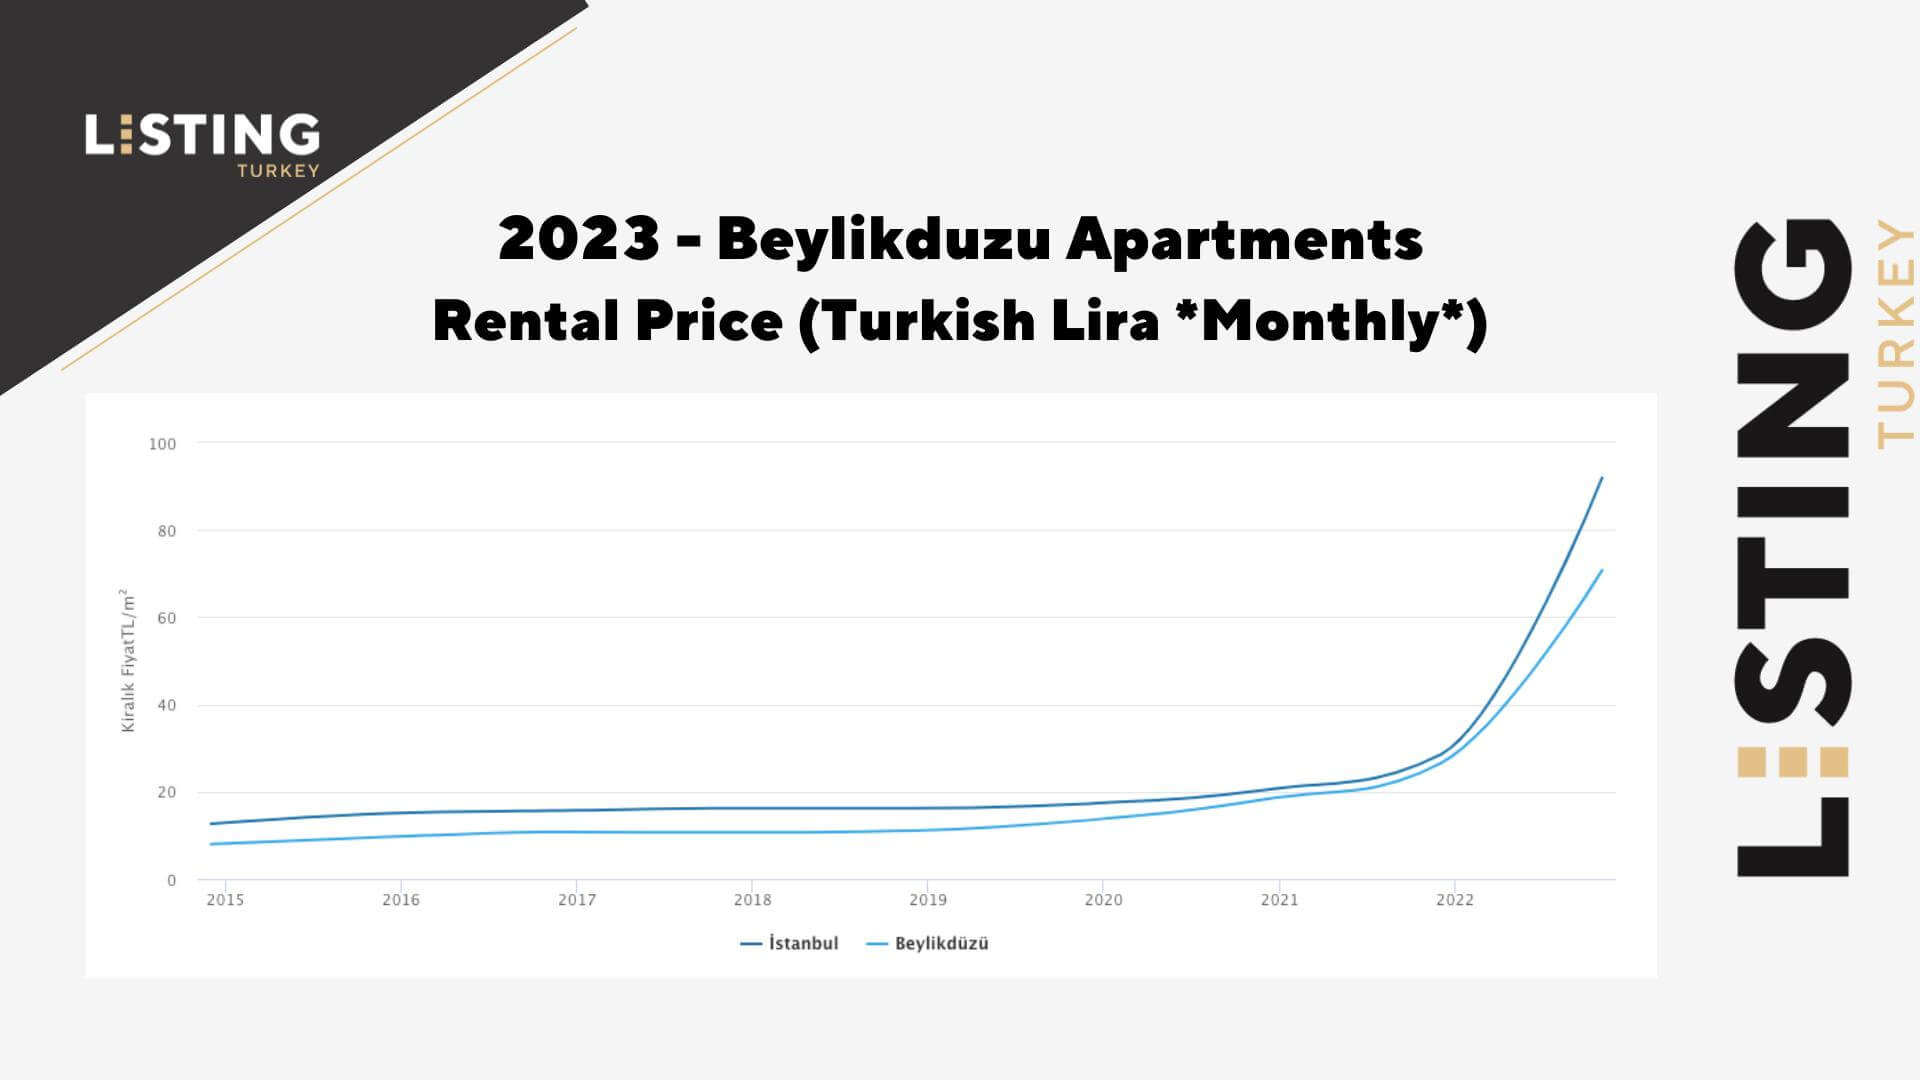 Beylikduzu Apartments Rental Prices